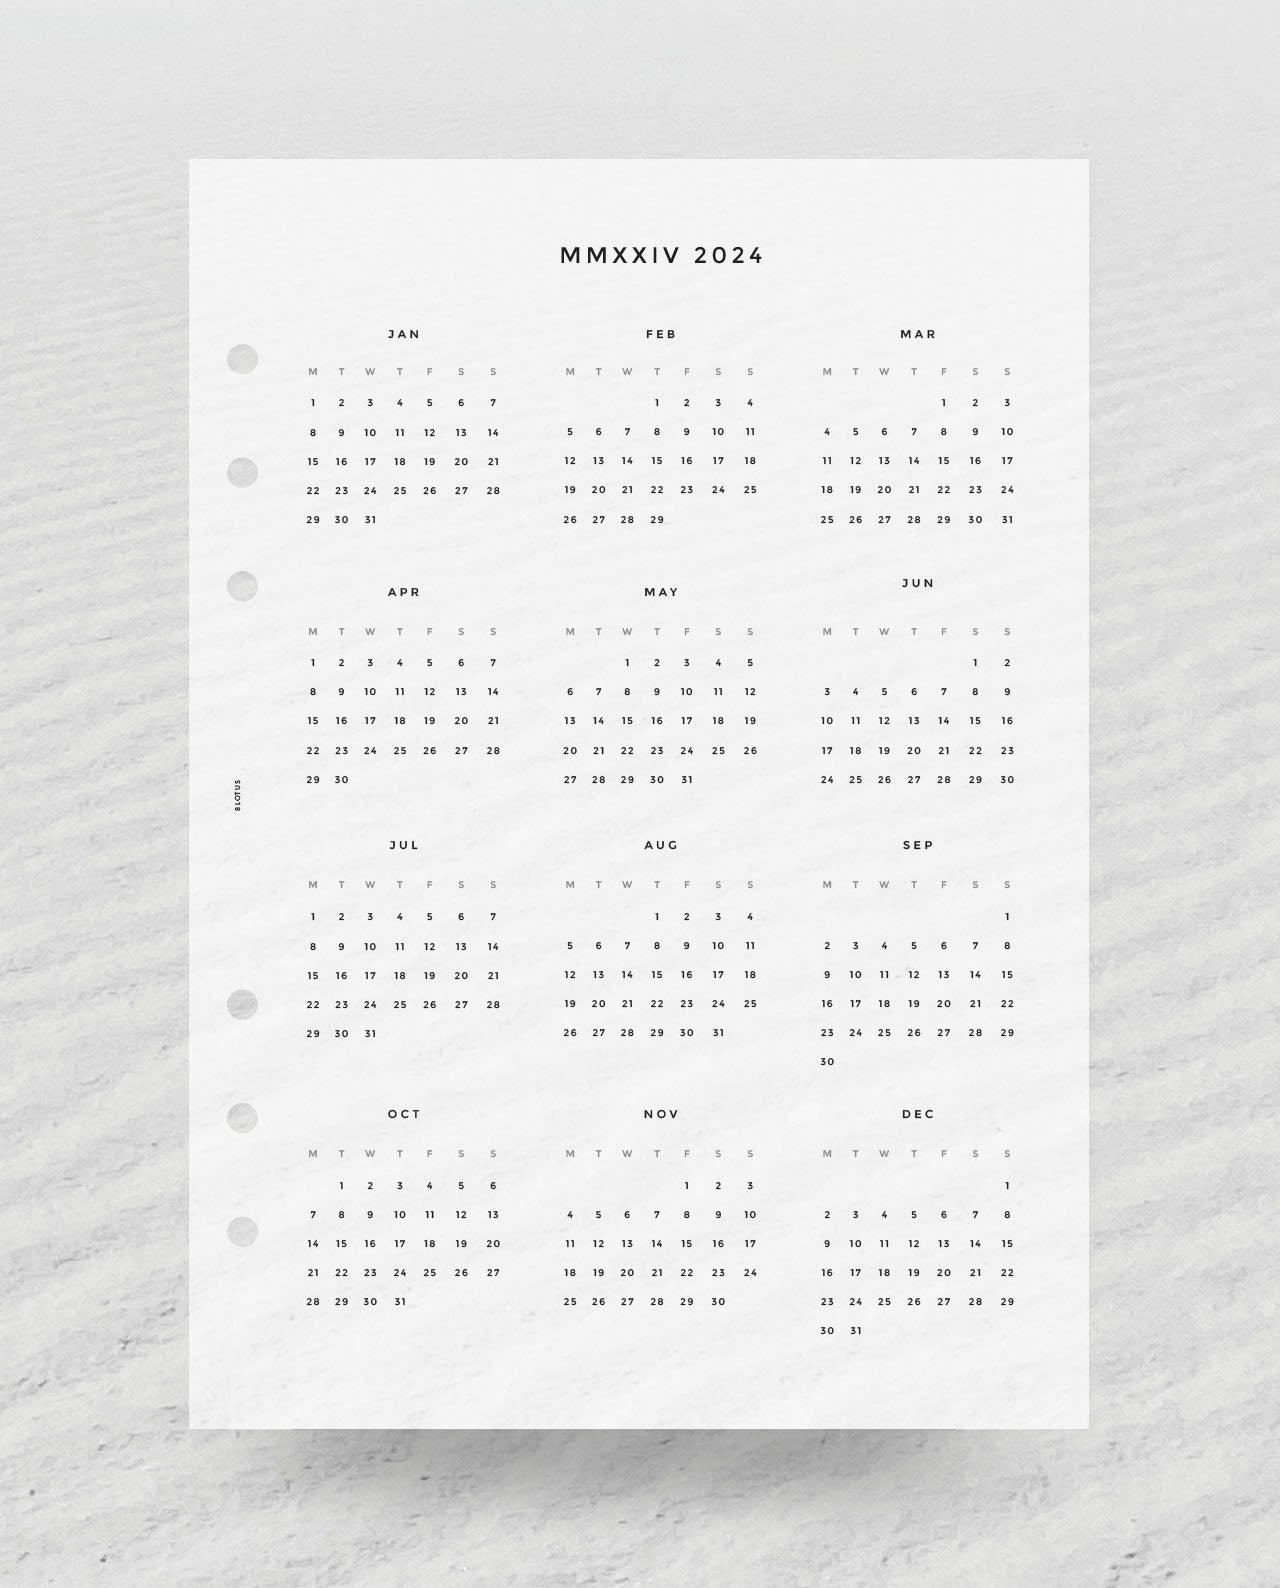 LV advent calendar 2021 (no stickers**)